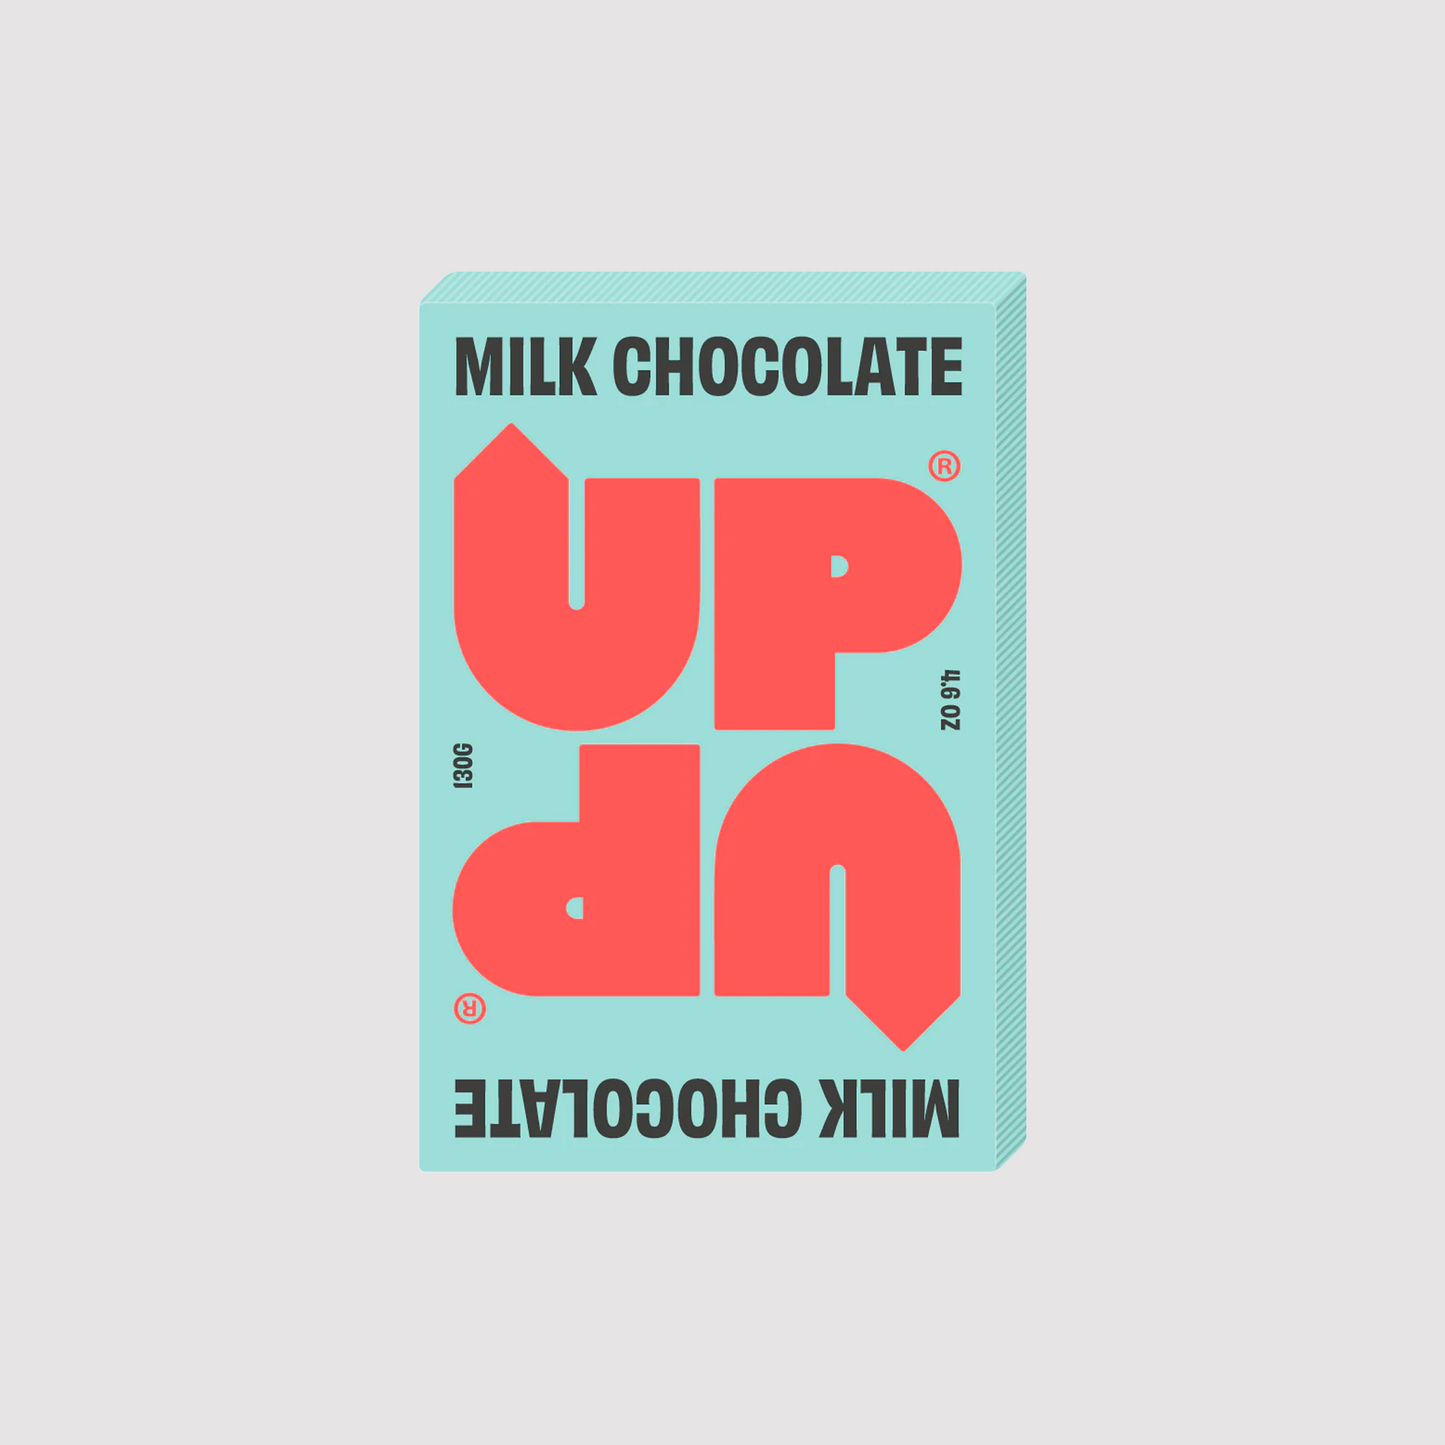 Original Milk Chocolate